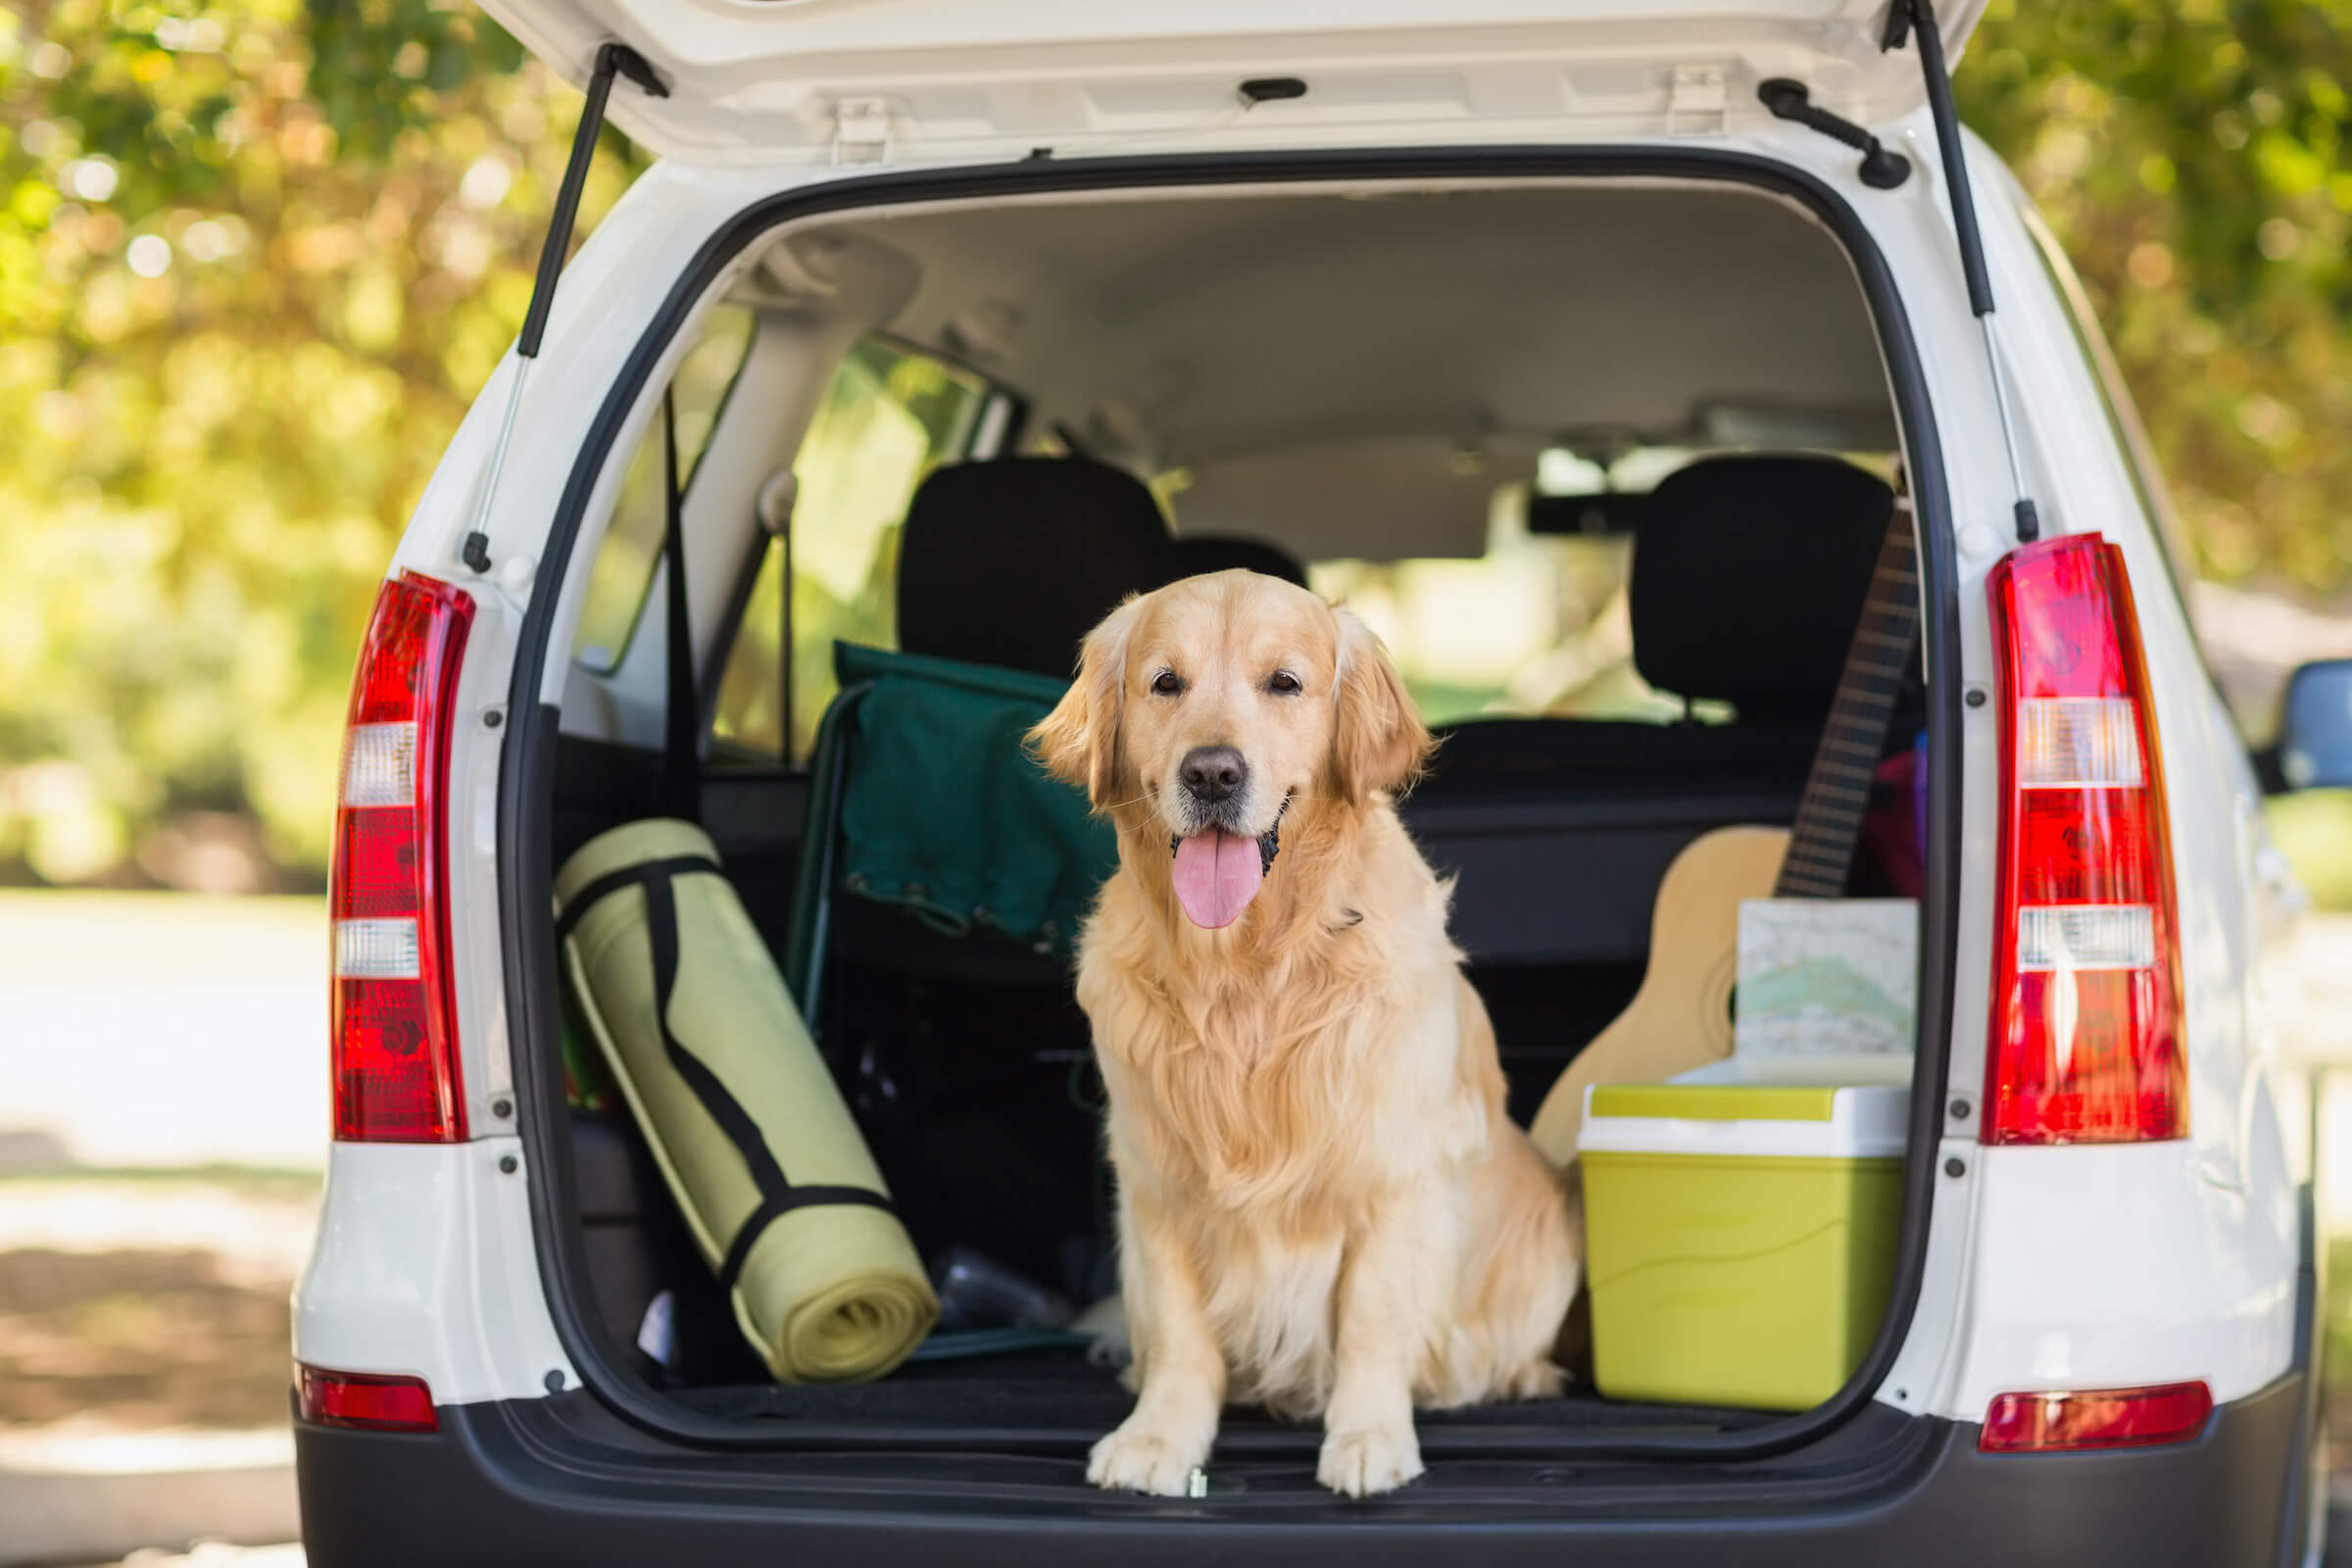 Your pet big. Собака в багажнике. Собака в багажнике автомобиля. Путешествие с собакой на машине. Для перевозки собак в автомобиле.